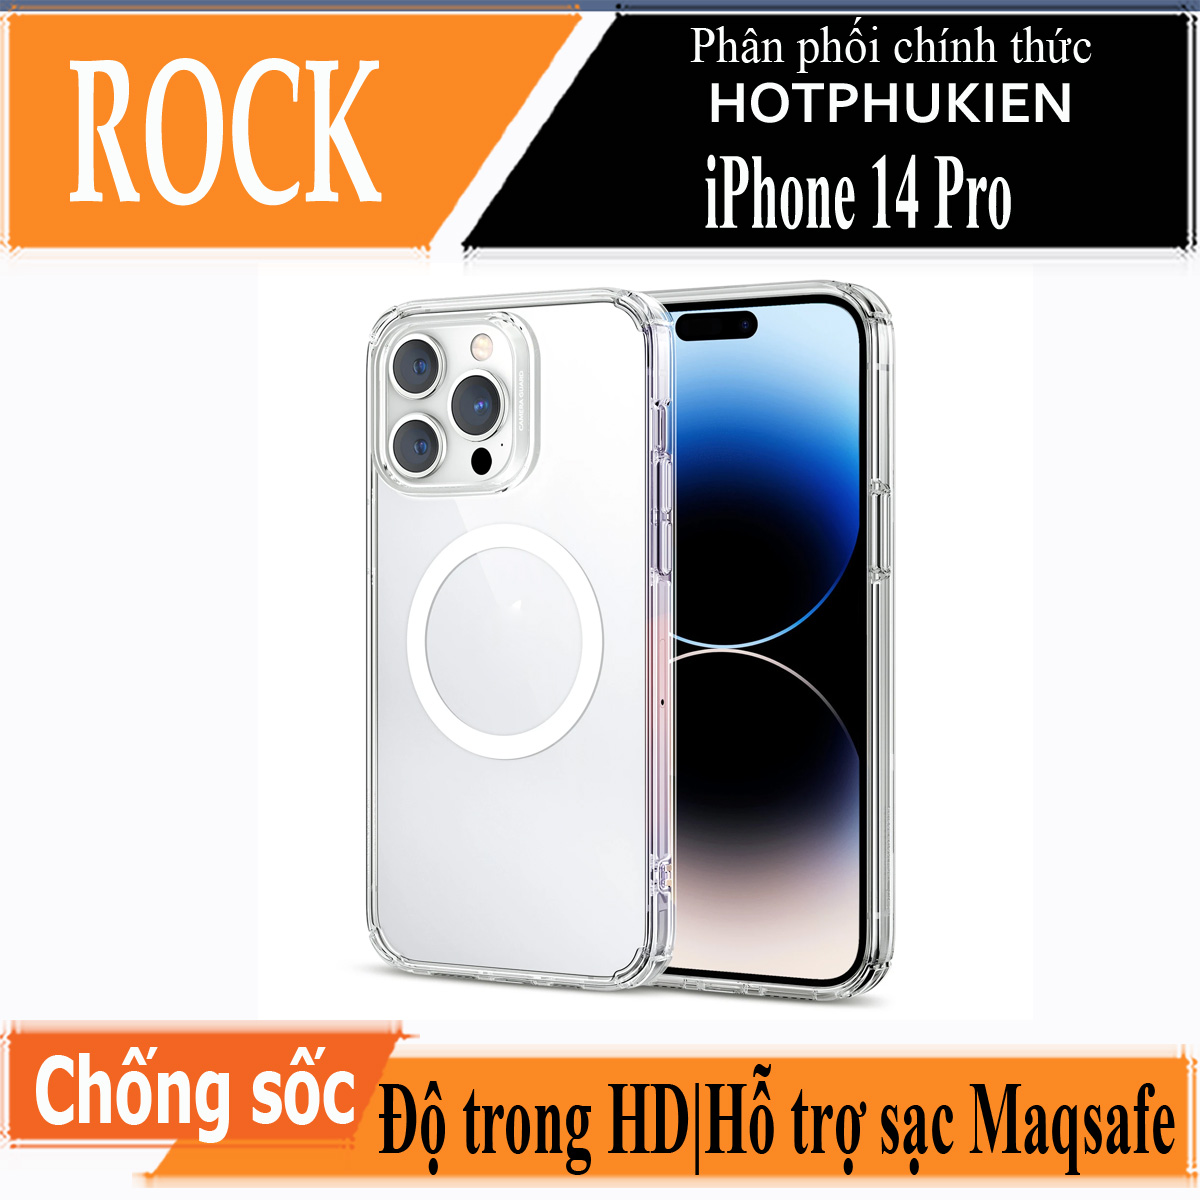 Hình ảnh Ốp lưng chống sốc trong suốt hỗ trợ sạc Maqsafe cho iPhone 14 Pro (6.1 inch) hiệu Rock Protection Maqsafe Magetic Case (siêu mỏng 1.5mm, độ trong tuyệt đối, chống trầy xước, chống ố vàng, tản nhiệt tốt) - hàng nhập khẩu